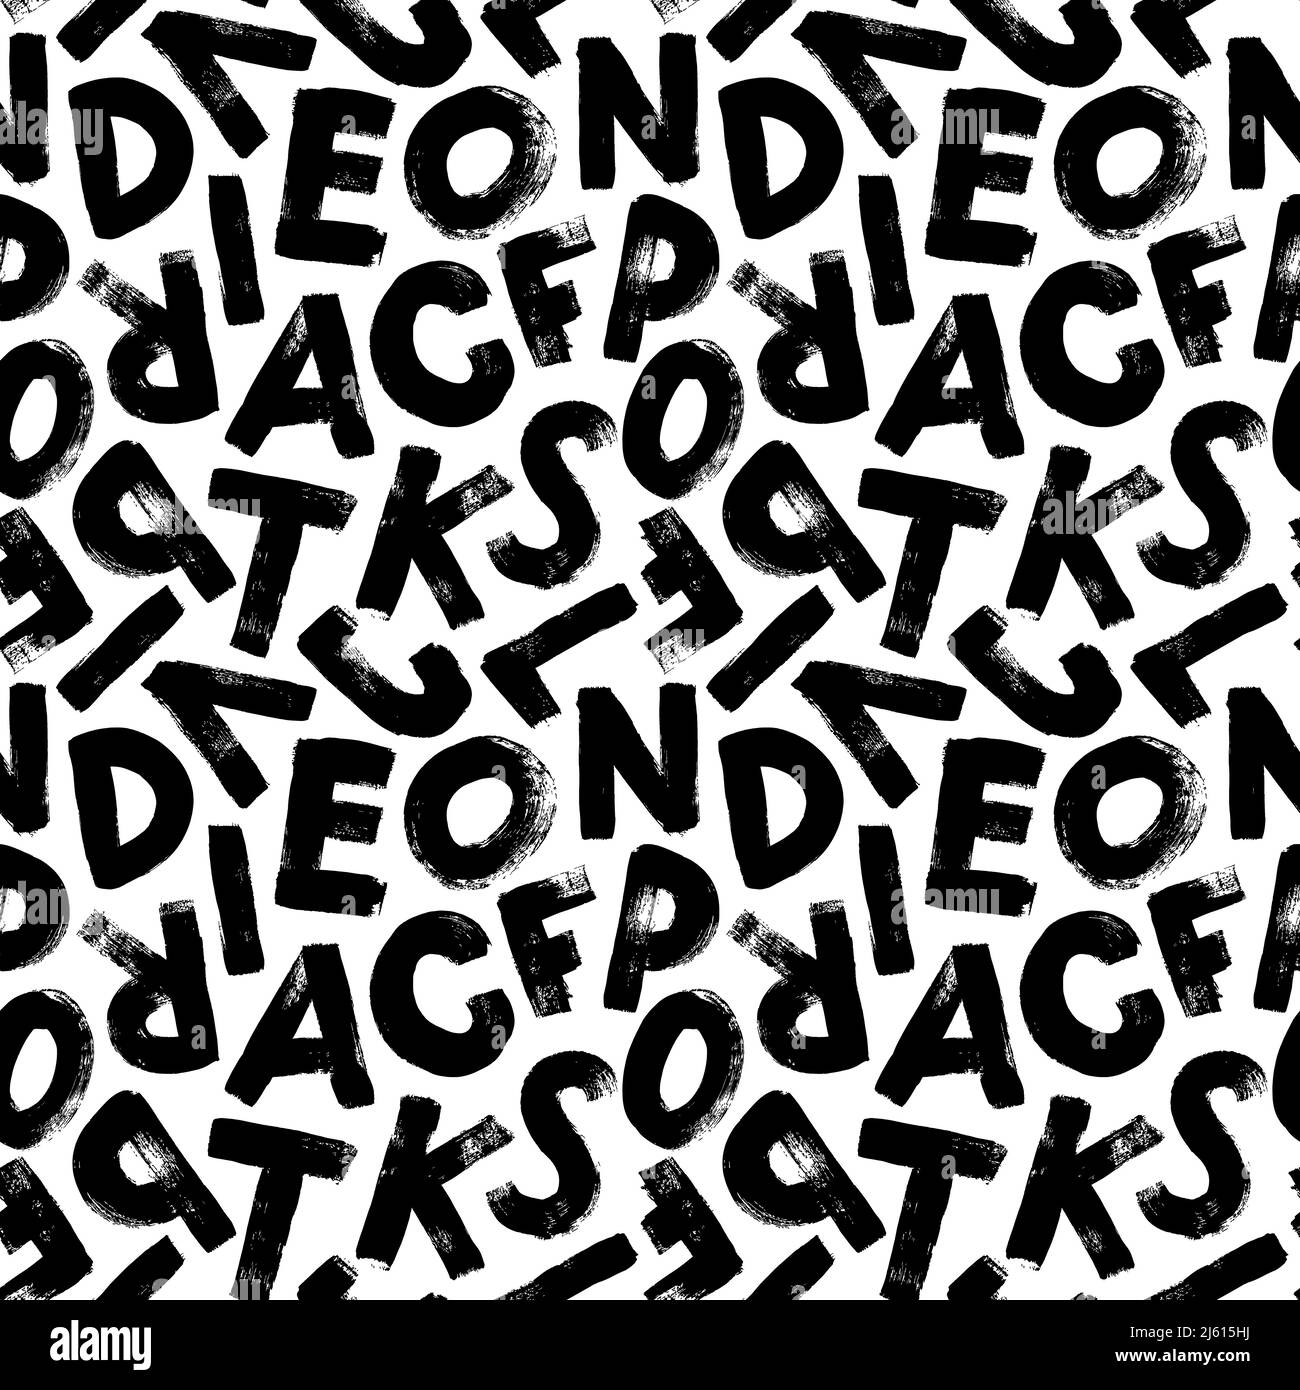 Alphabet handgezeichnetes Grunge Buchstaben nahtloses Muster Stock Vektor